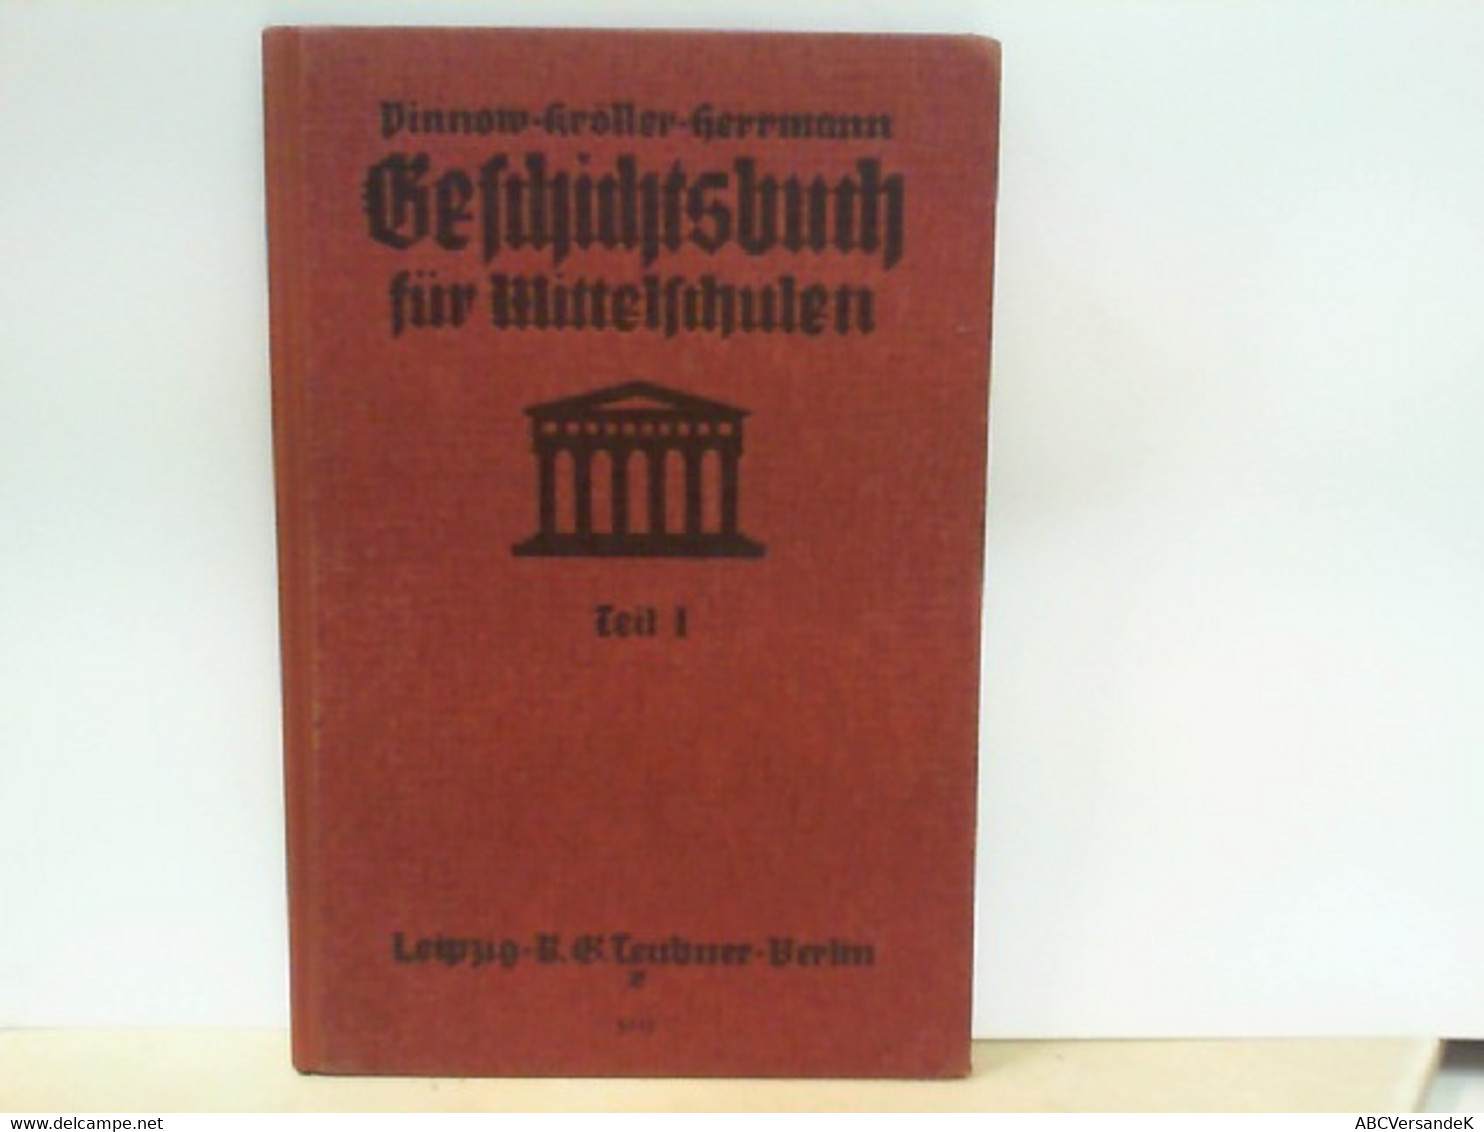 Pinnows Geschichtsbuch Für Mittelschulen - Teil 1 : Alte Geschichte - Livres Scolaires